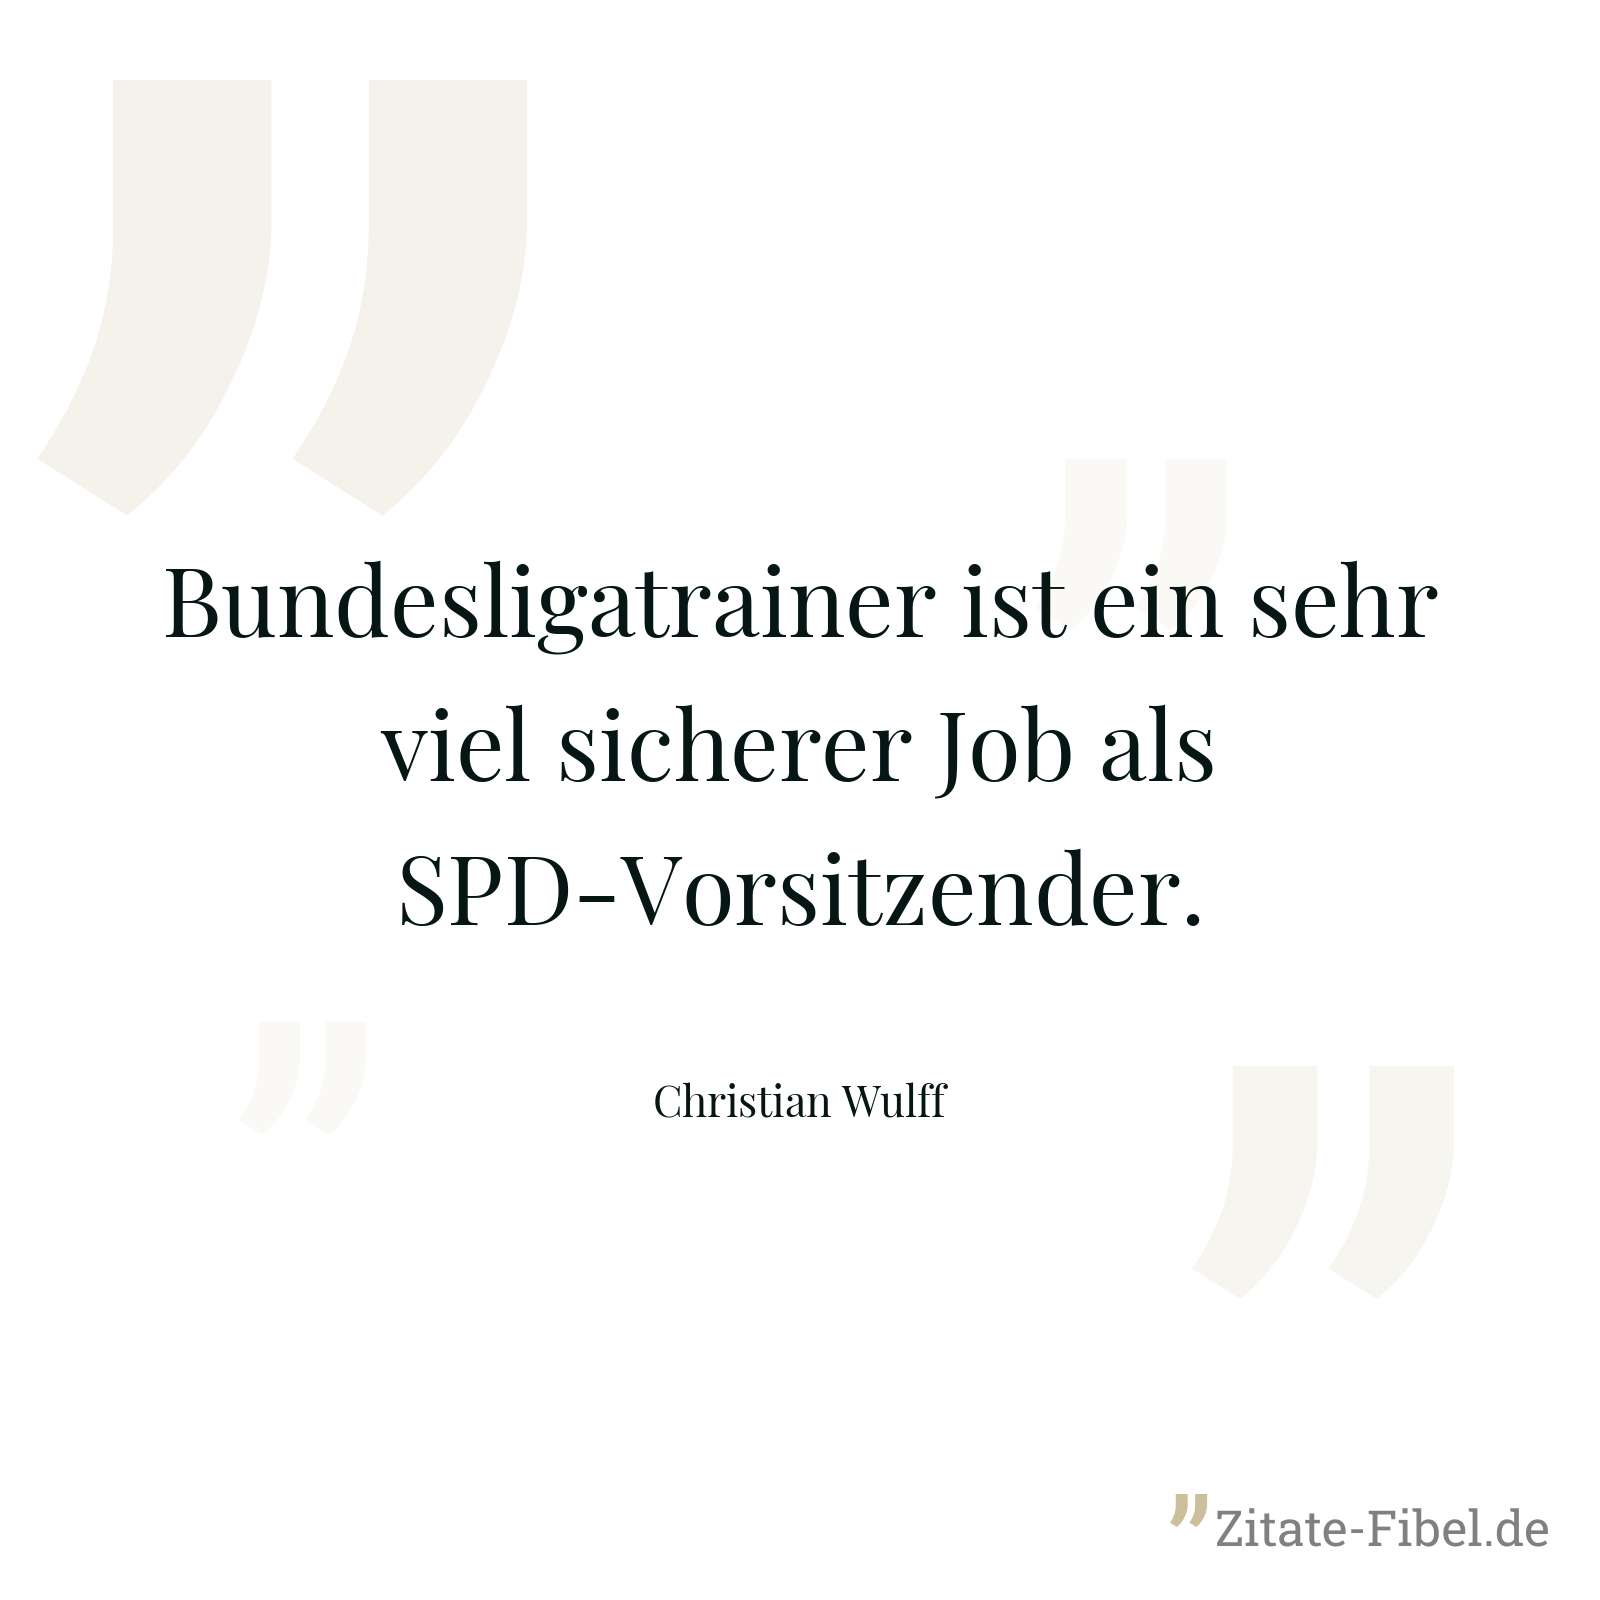 Bundesligatrainer ist ein sehr viel sicherer Job als SPD-Vorsitzender. - Christian Wulff